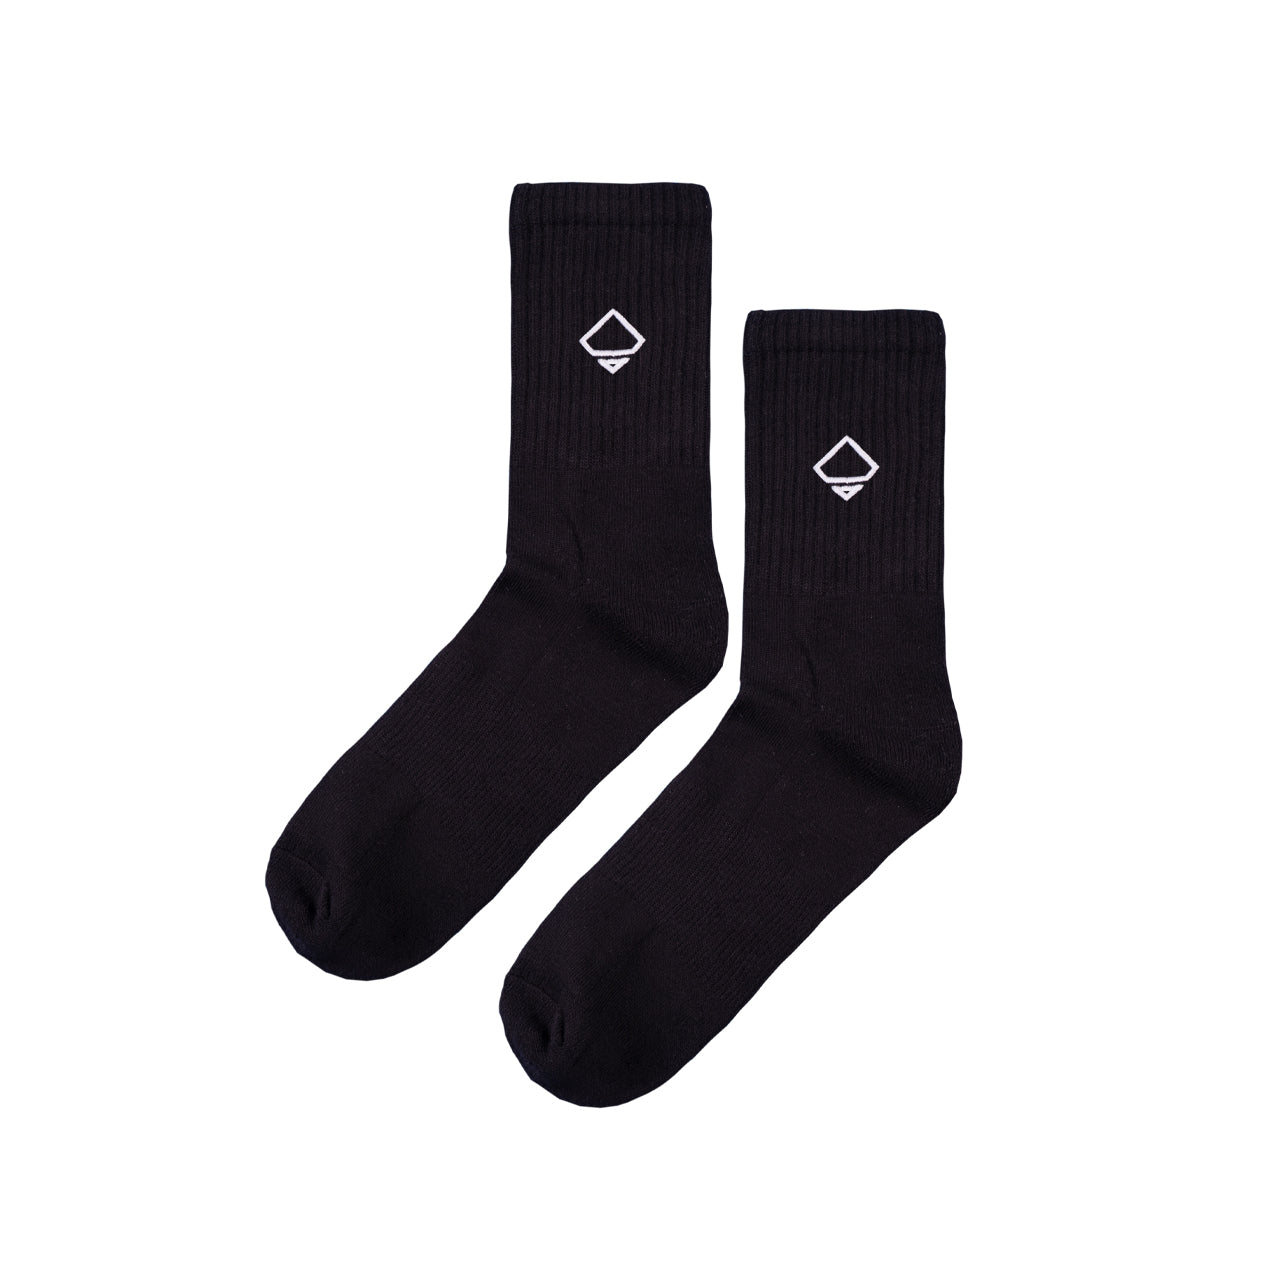 Bootshaus - Emblem Socks